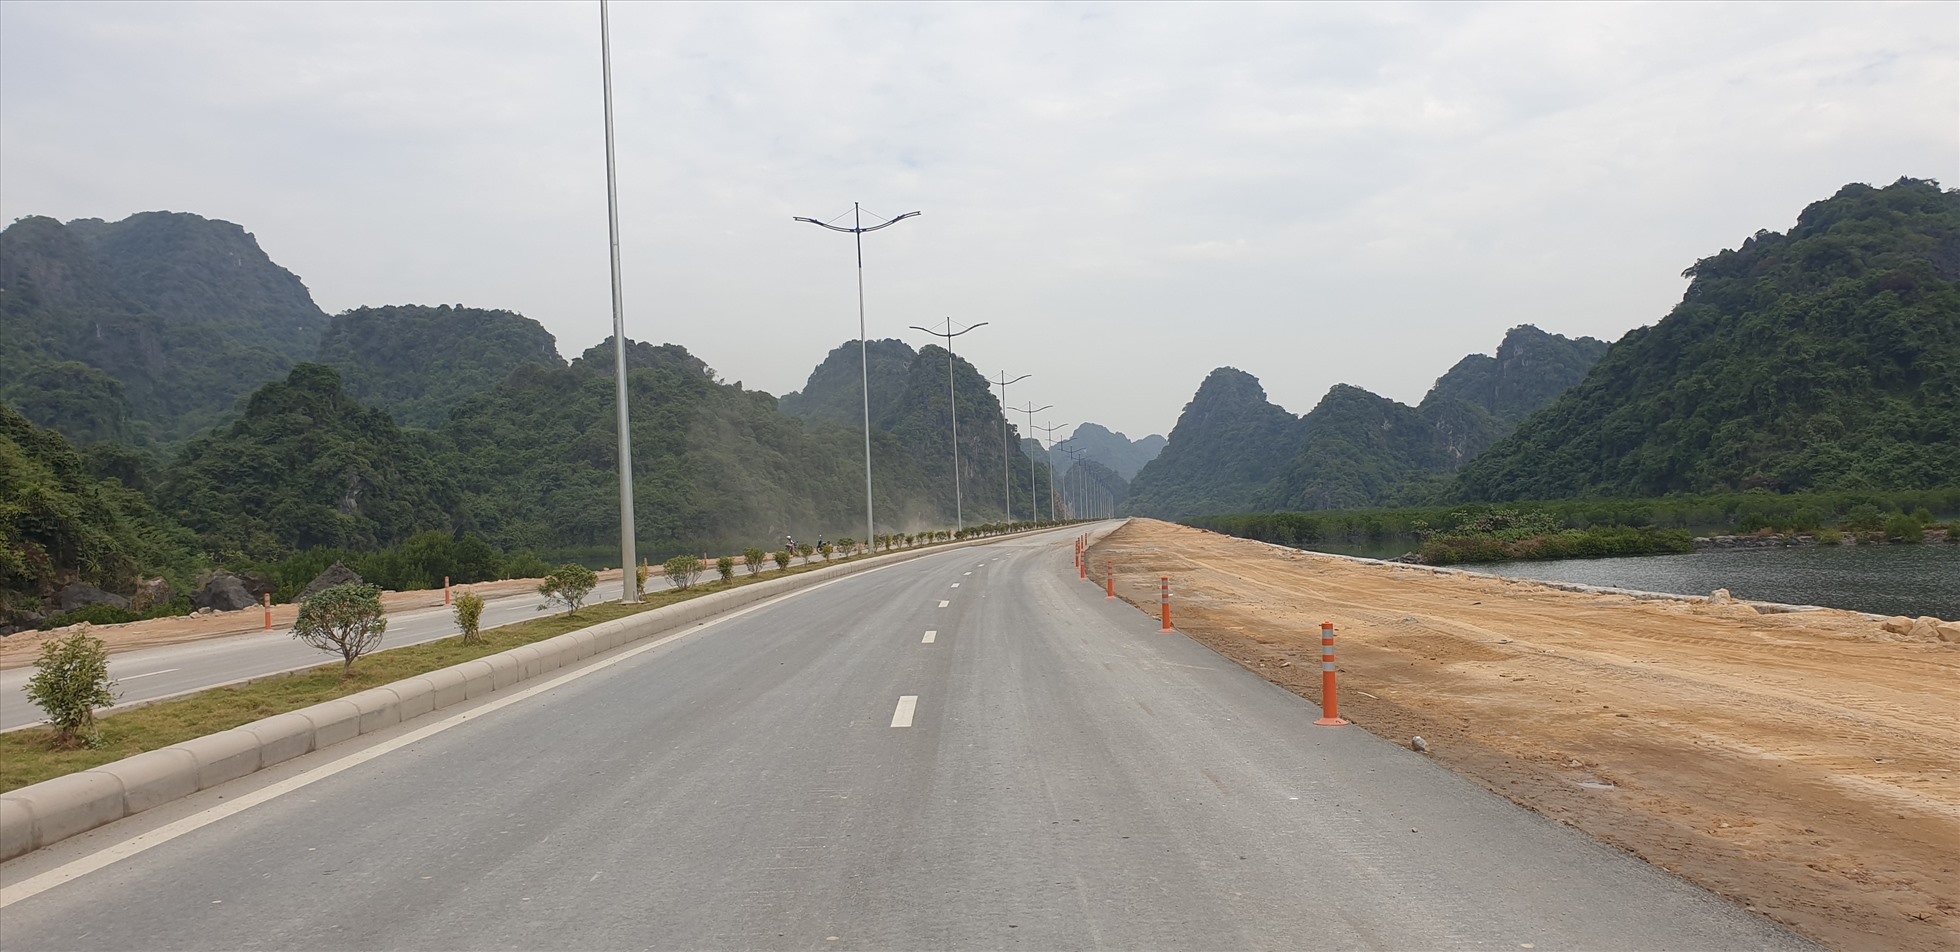 Đường ven biển Hạ Long - Cẩm Phả giai đoạn 1 được đưa vào sử dụng từ 1.1.2022. Ảnh: Nguyễn Hùng